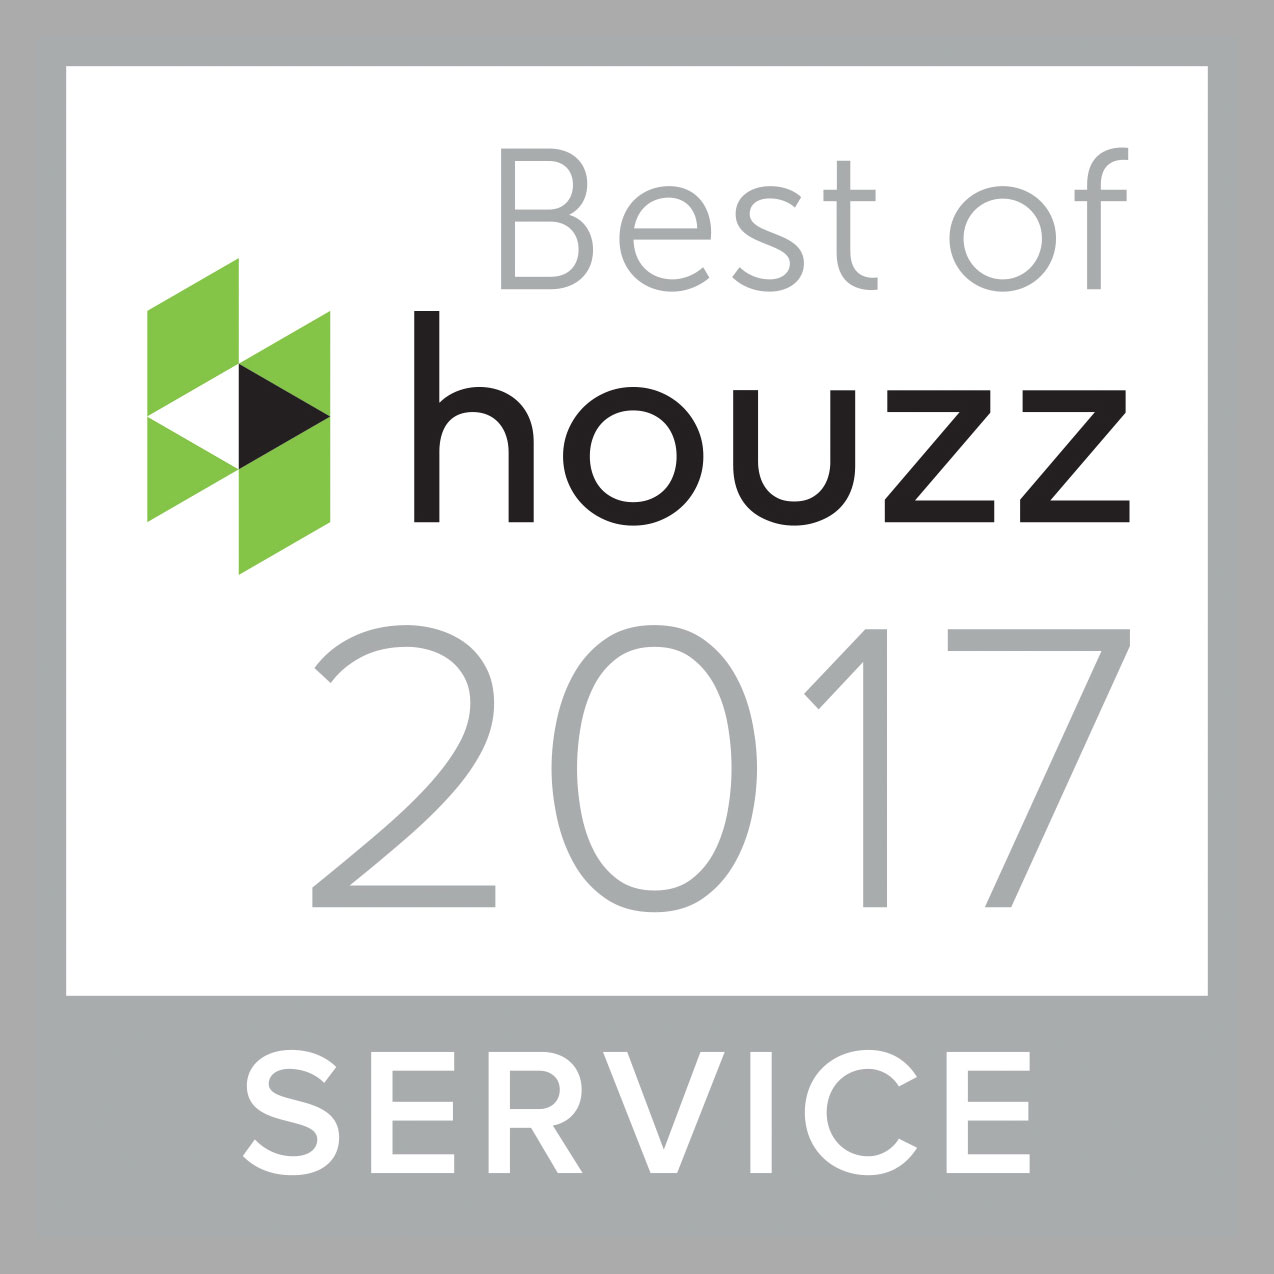 Best-of-houzz_Service_2017.jpg